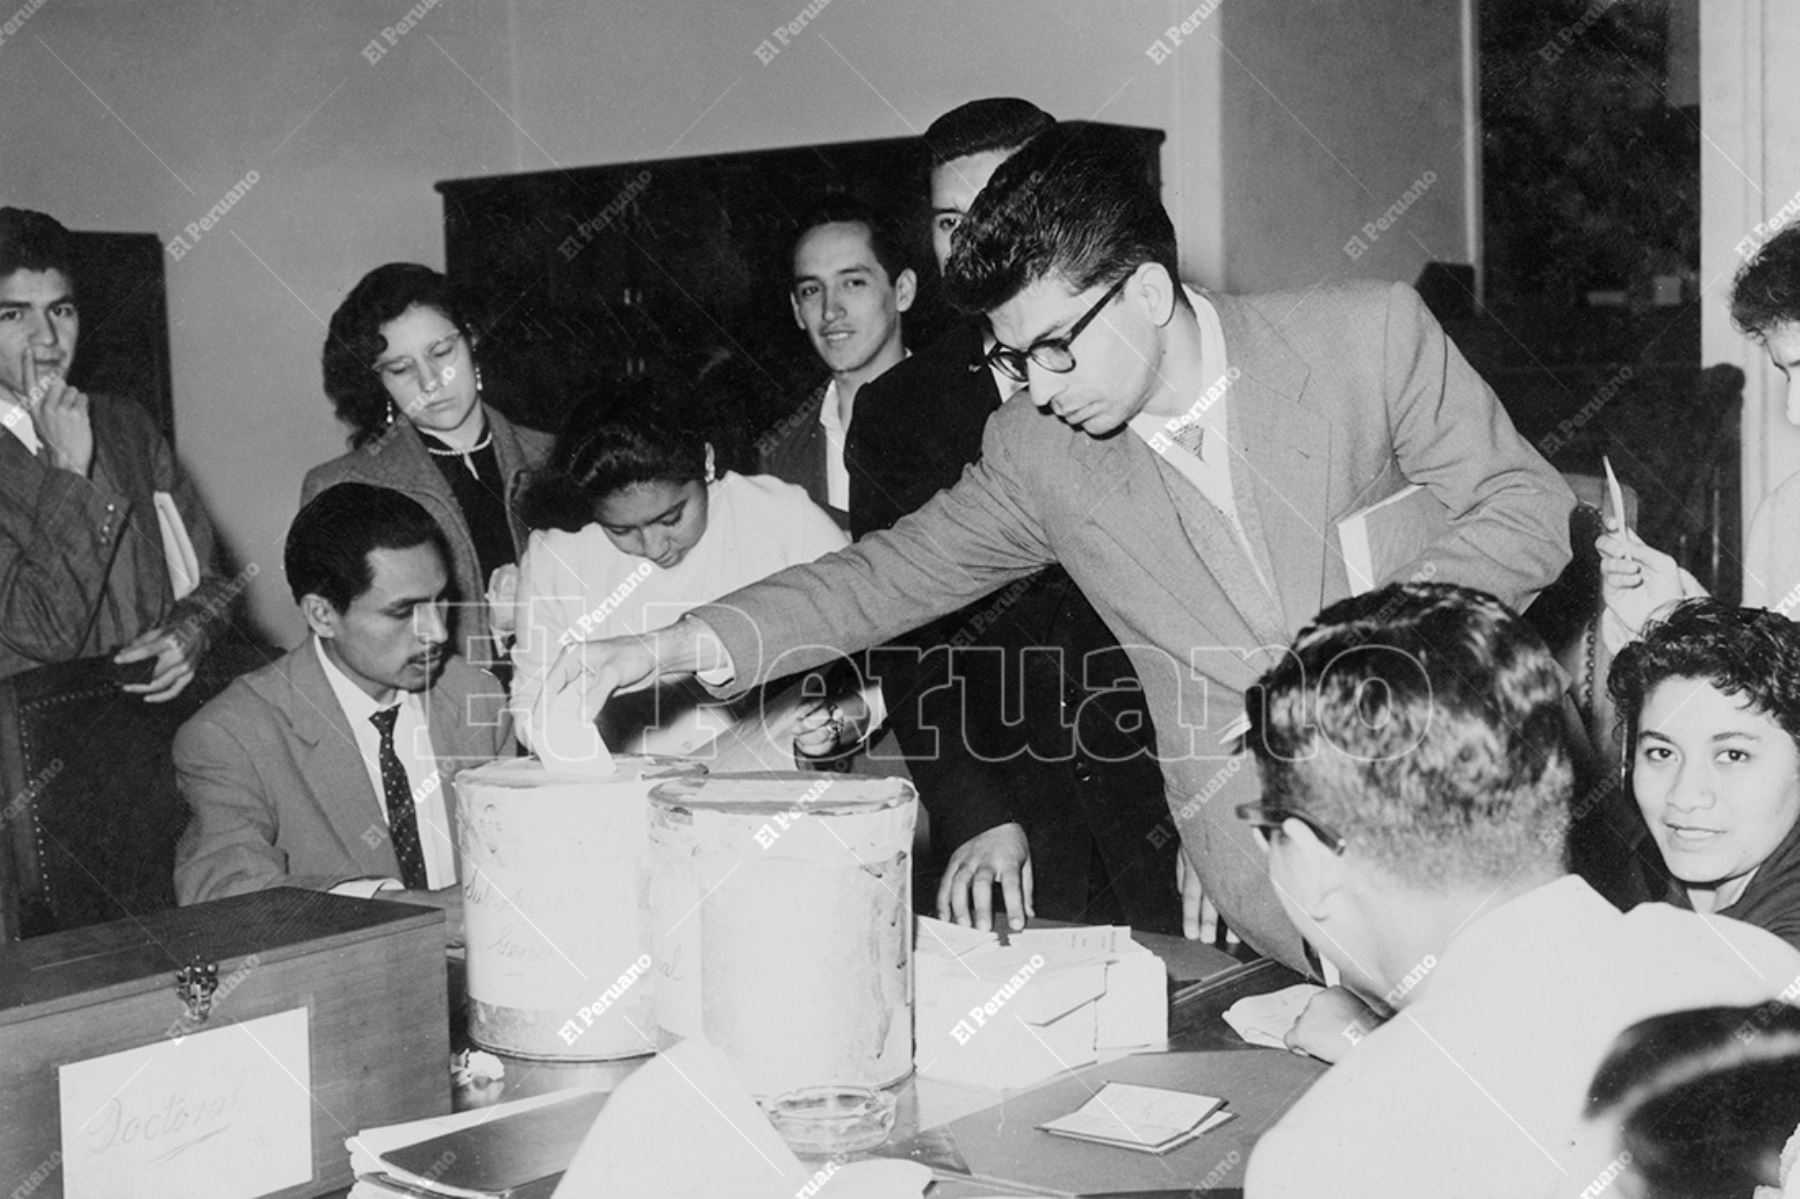 Lima - 1959 / Elecciones para elegir representantes estudiantiles en la Universidad Nacional Mayor de San Marcos. Foto: Archivo Histórico de El Peruano / Braulio Cabrera